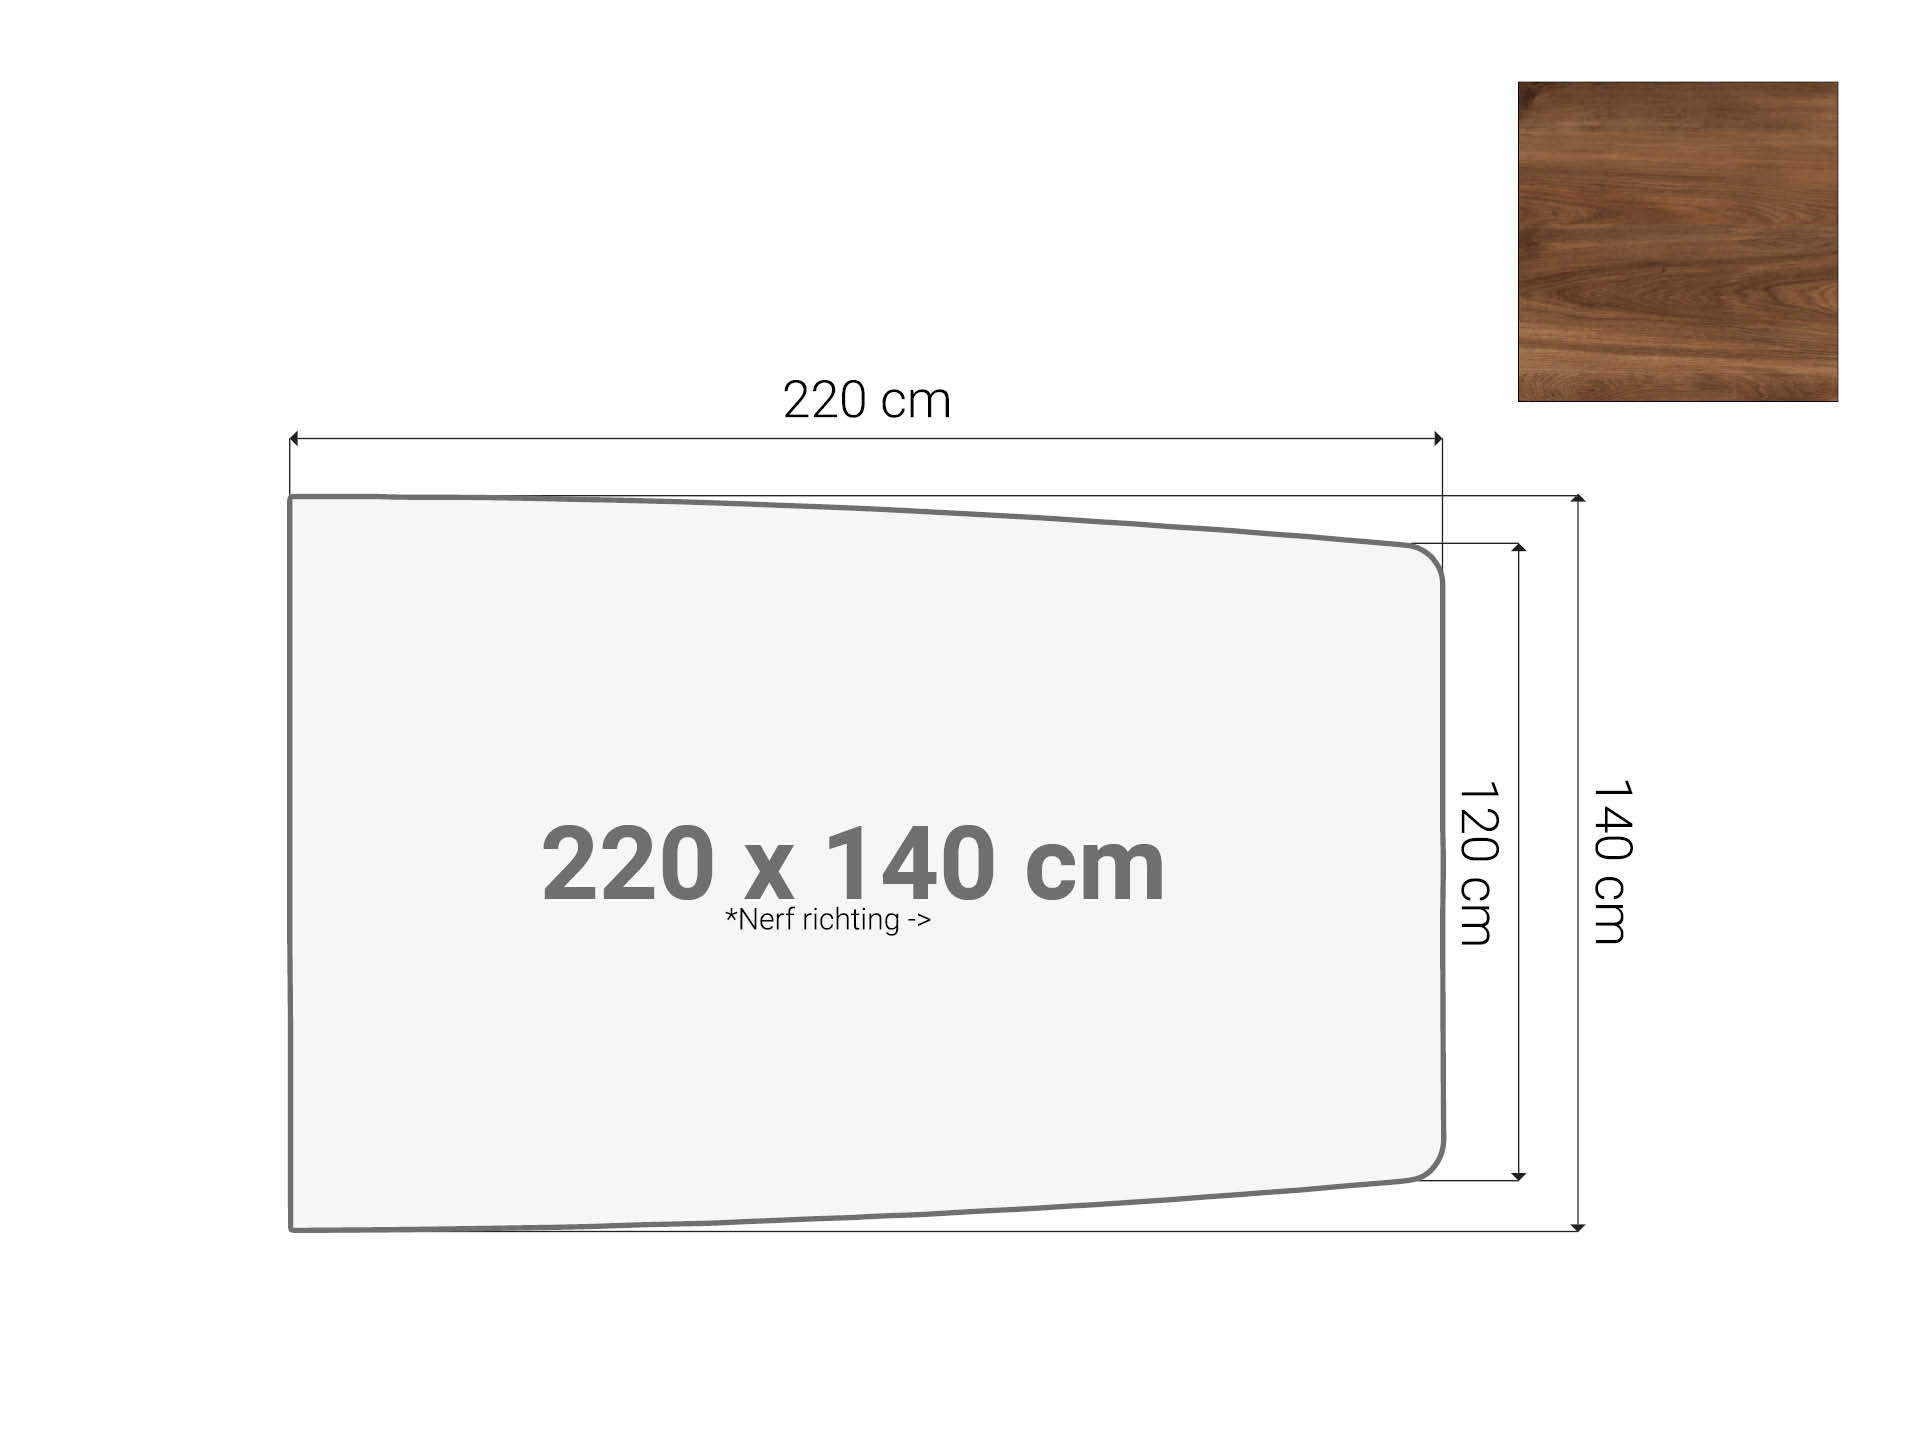 Half bootvormig vergadertafel blad Cognac Walnoten 220x140cm